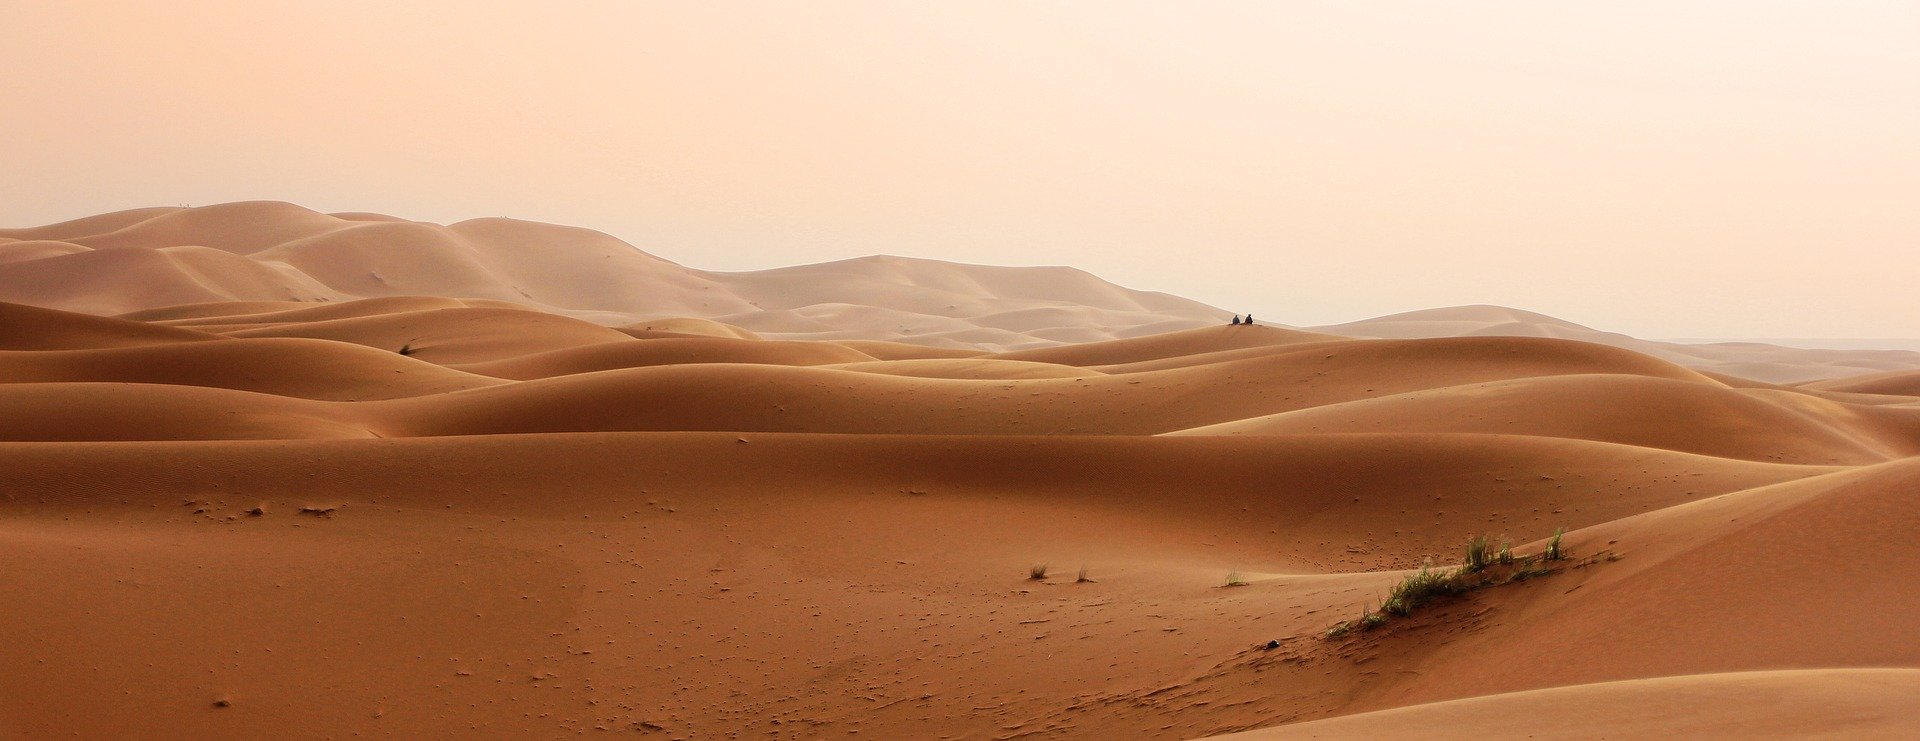 désert, paysage, sable, landscape, sand, travelers